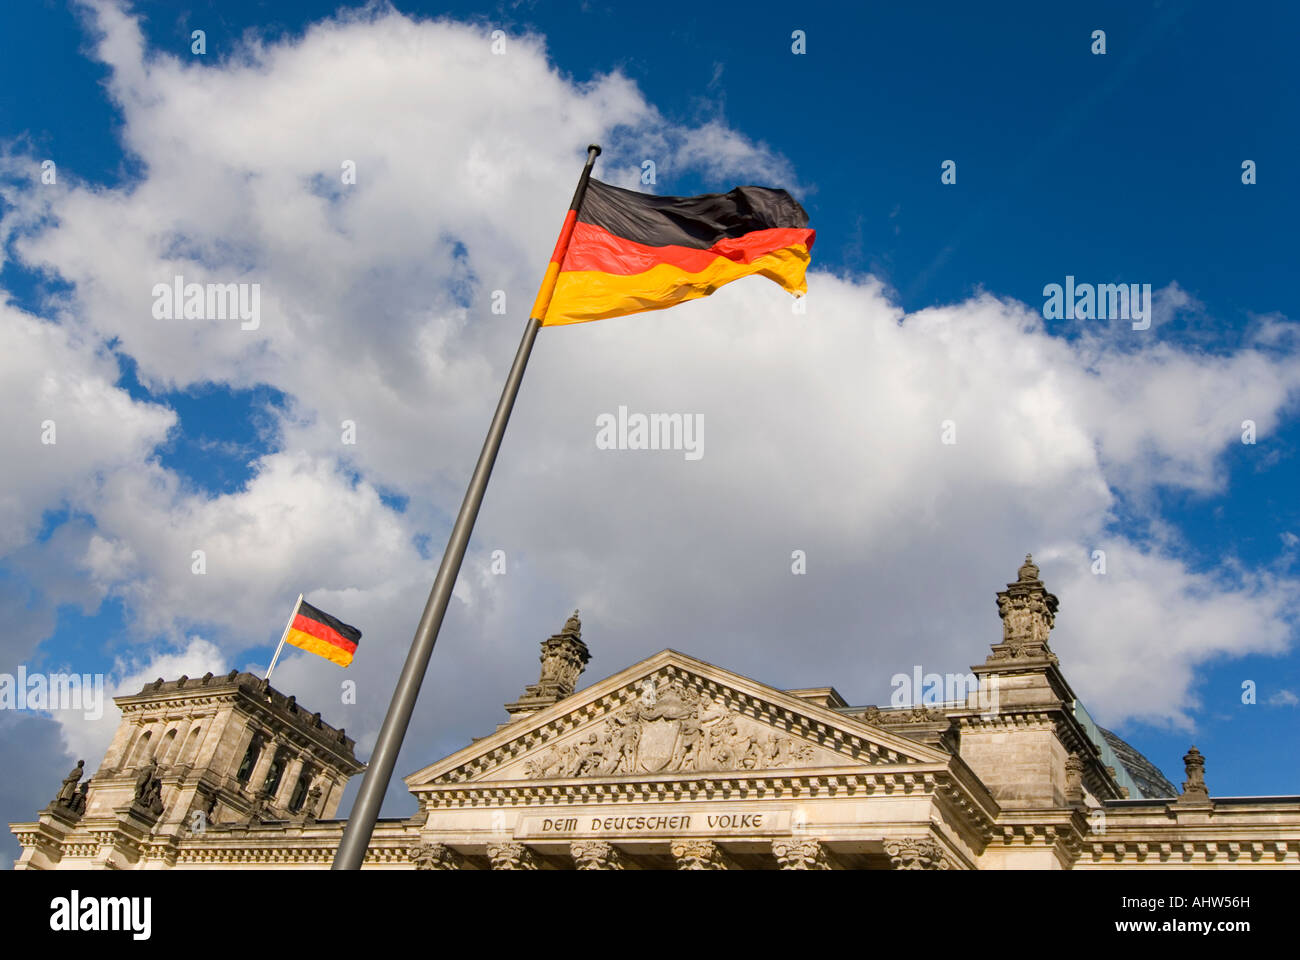 Orizzontale vista anteriore del Reichstag con la famosa iscrizione "em Deutschen Volke', e un enorme bandiera tedesca in una giornata di sole Foto Stock